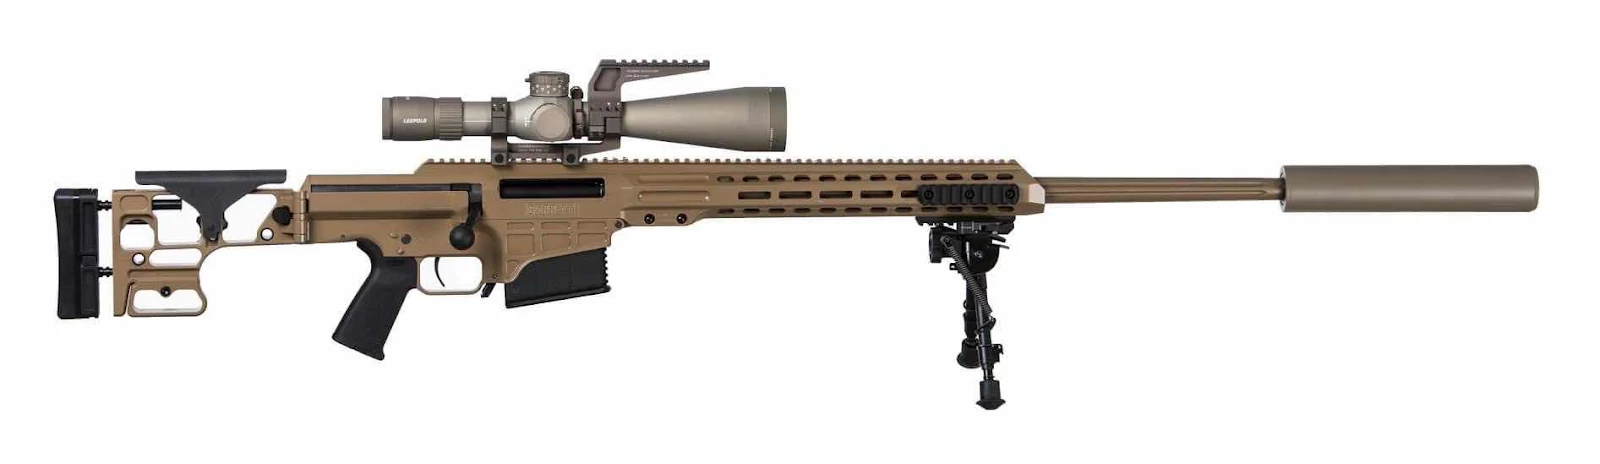 Hai binh chủng Thủy Quân Lục Chiến và Lục Quân Hoa Kỳ cùng với các đơn vị ưu tú như Biệt Kích có dự án năm tới 2021 sẽ đặt mua súng Barrett M-22 MRAD (Multi-role Adaptive Design, Thiết Kế Đa Dụng). Súng nặng 7 kg chưa kể băng đạn.